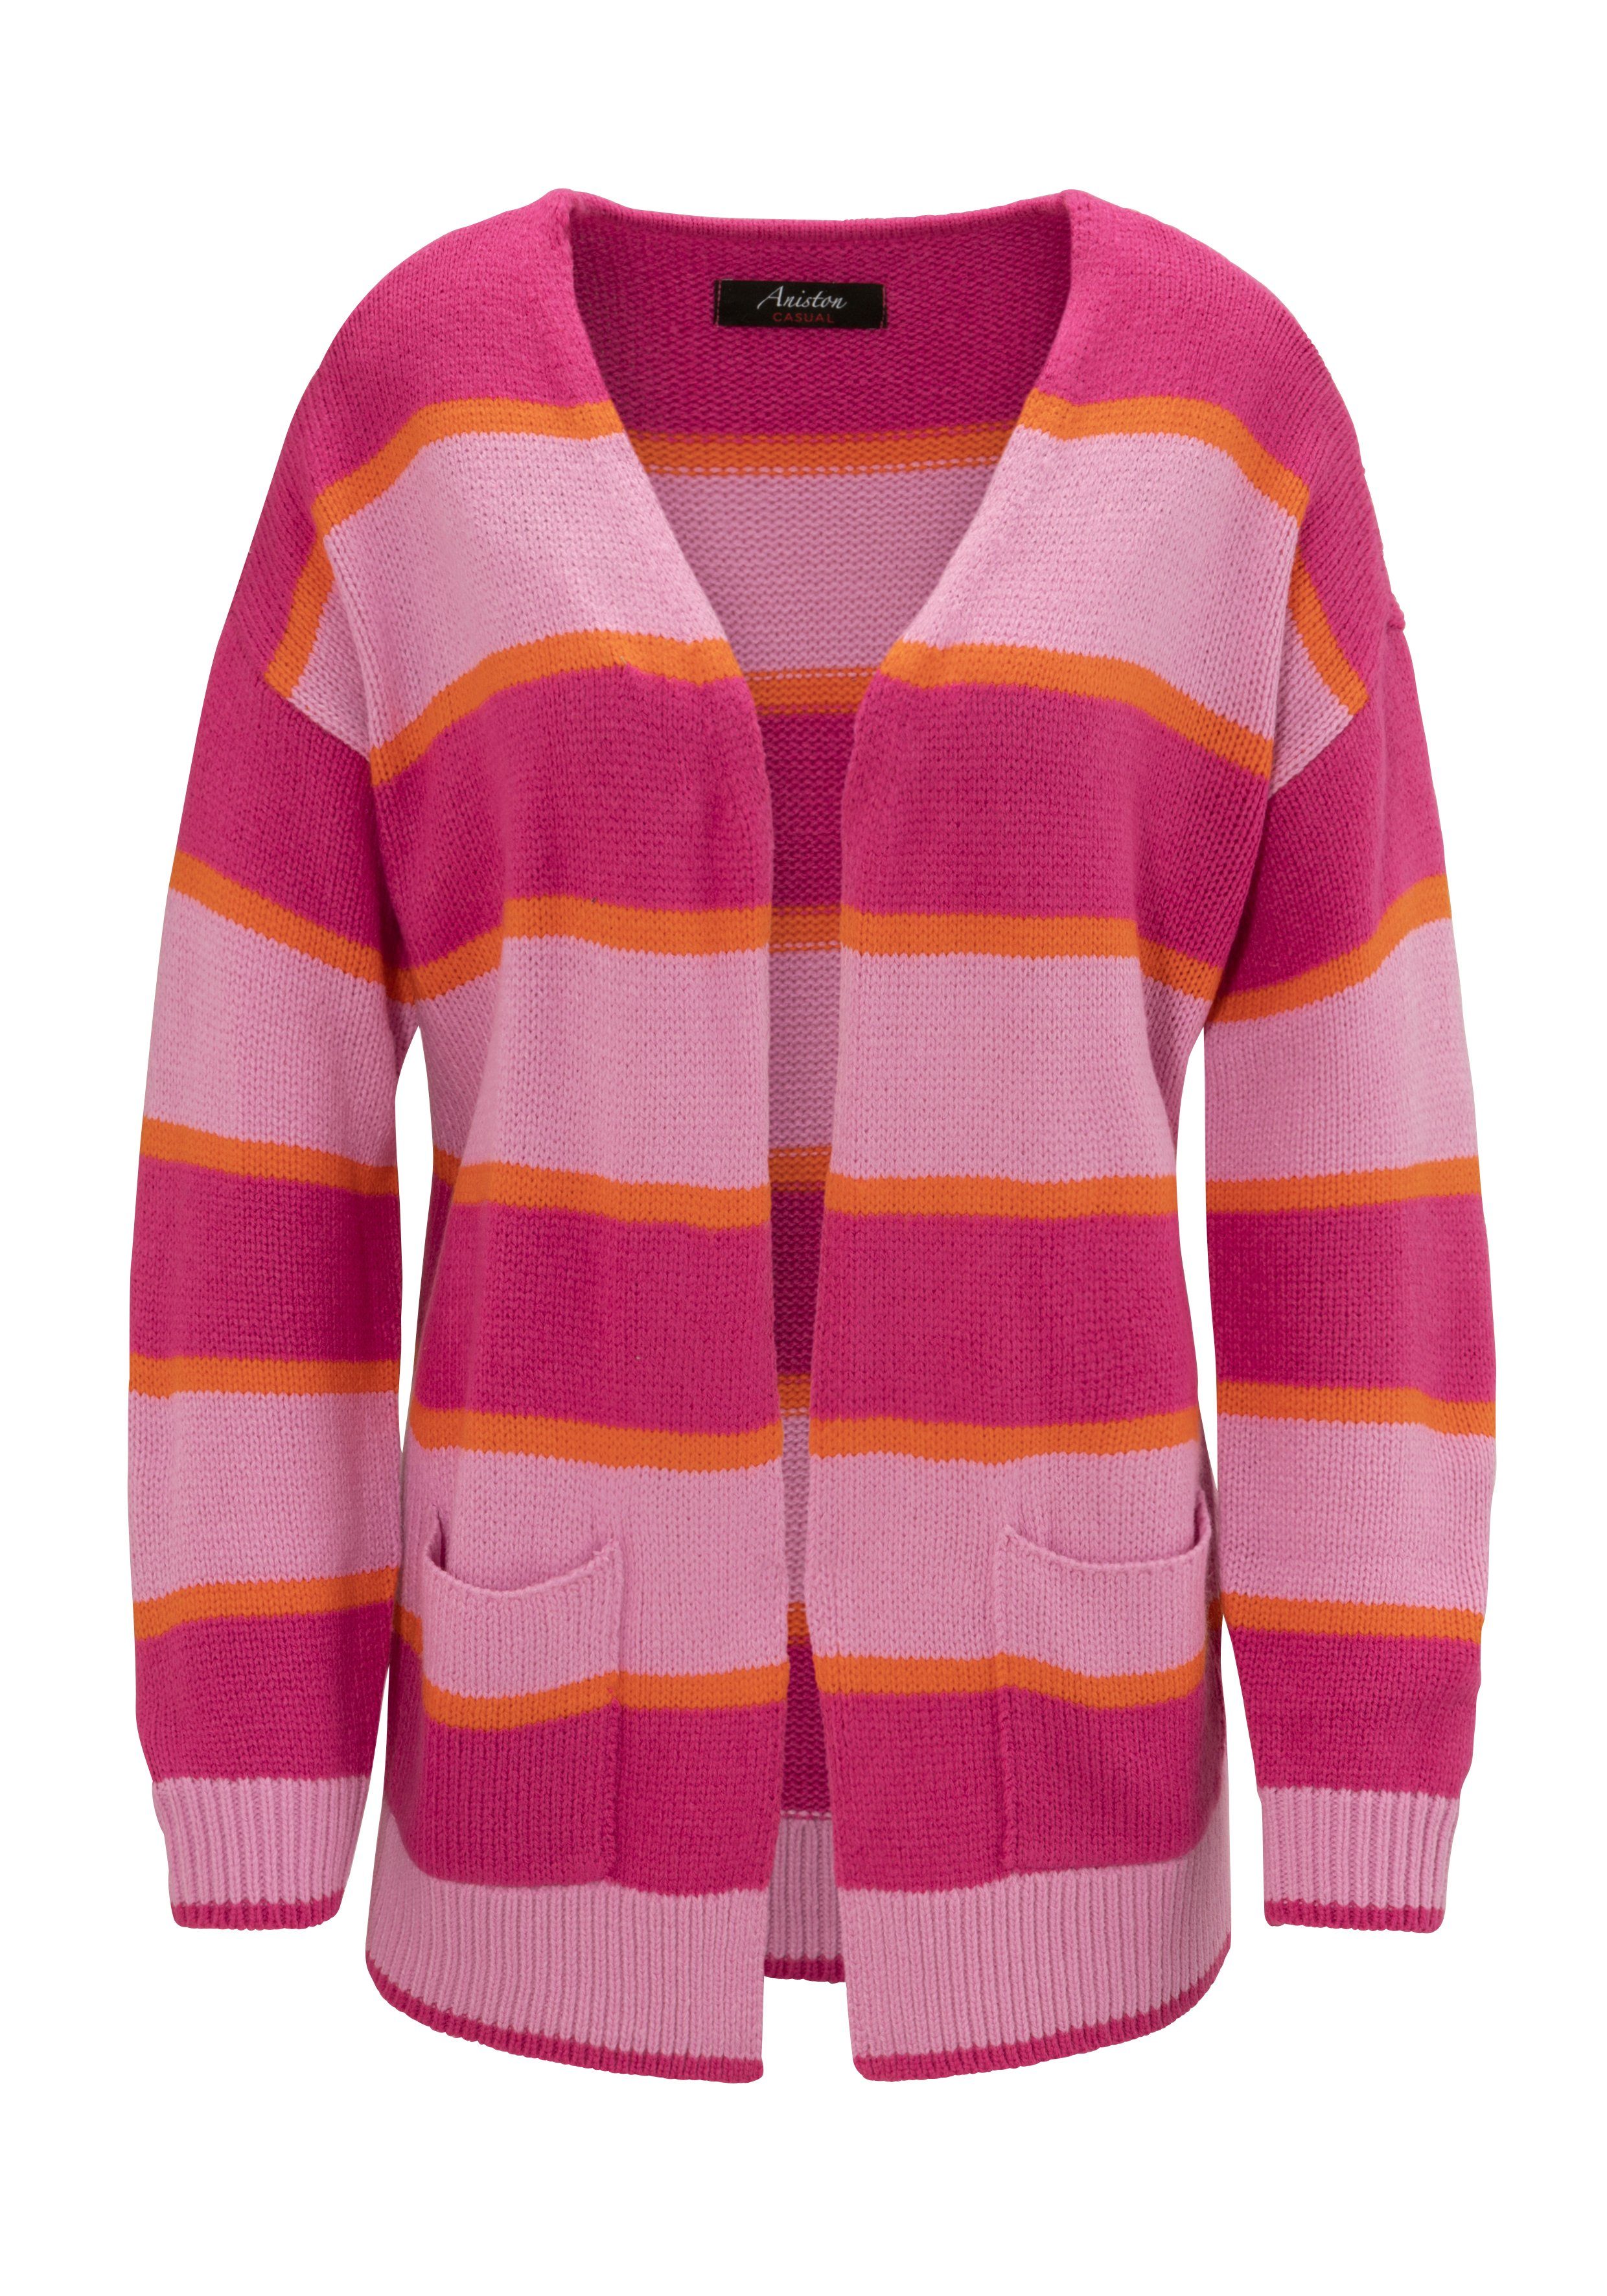 Aniston KOLLEKTION CASUAL Strickjacke NEUE pink-rosa-orange Streifen-Dessin farbharmonischem im -